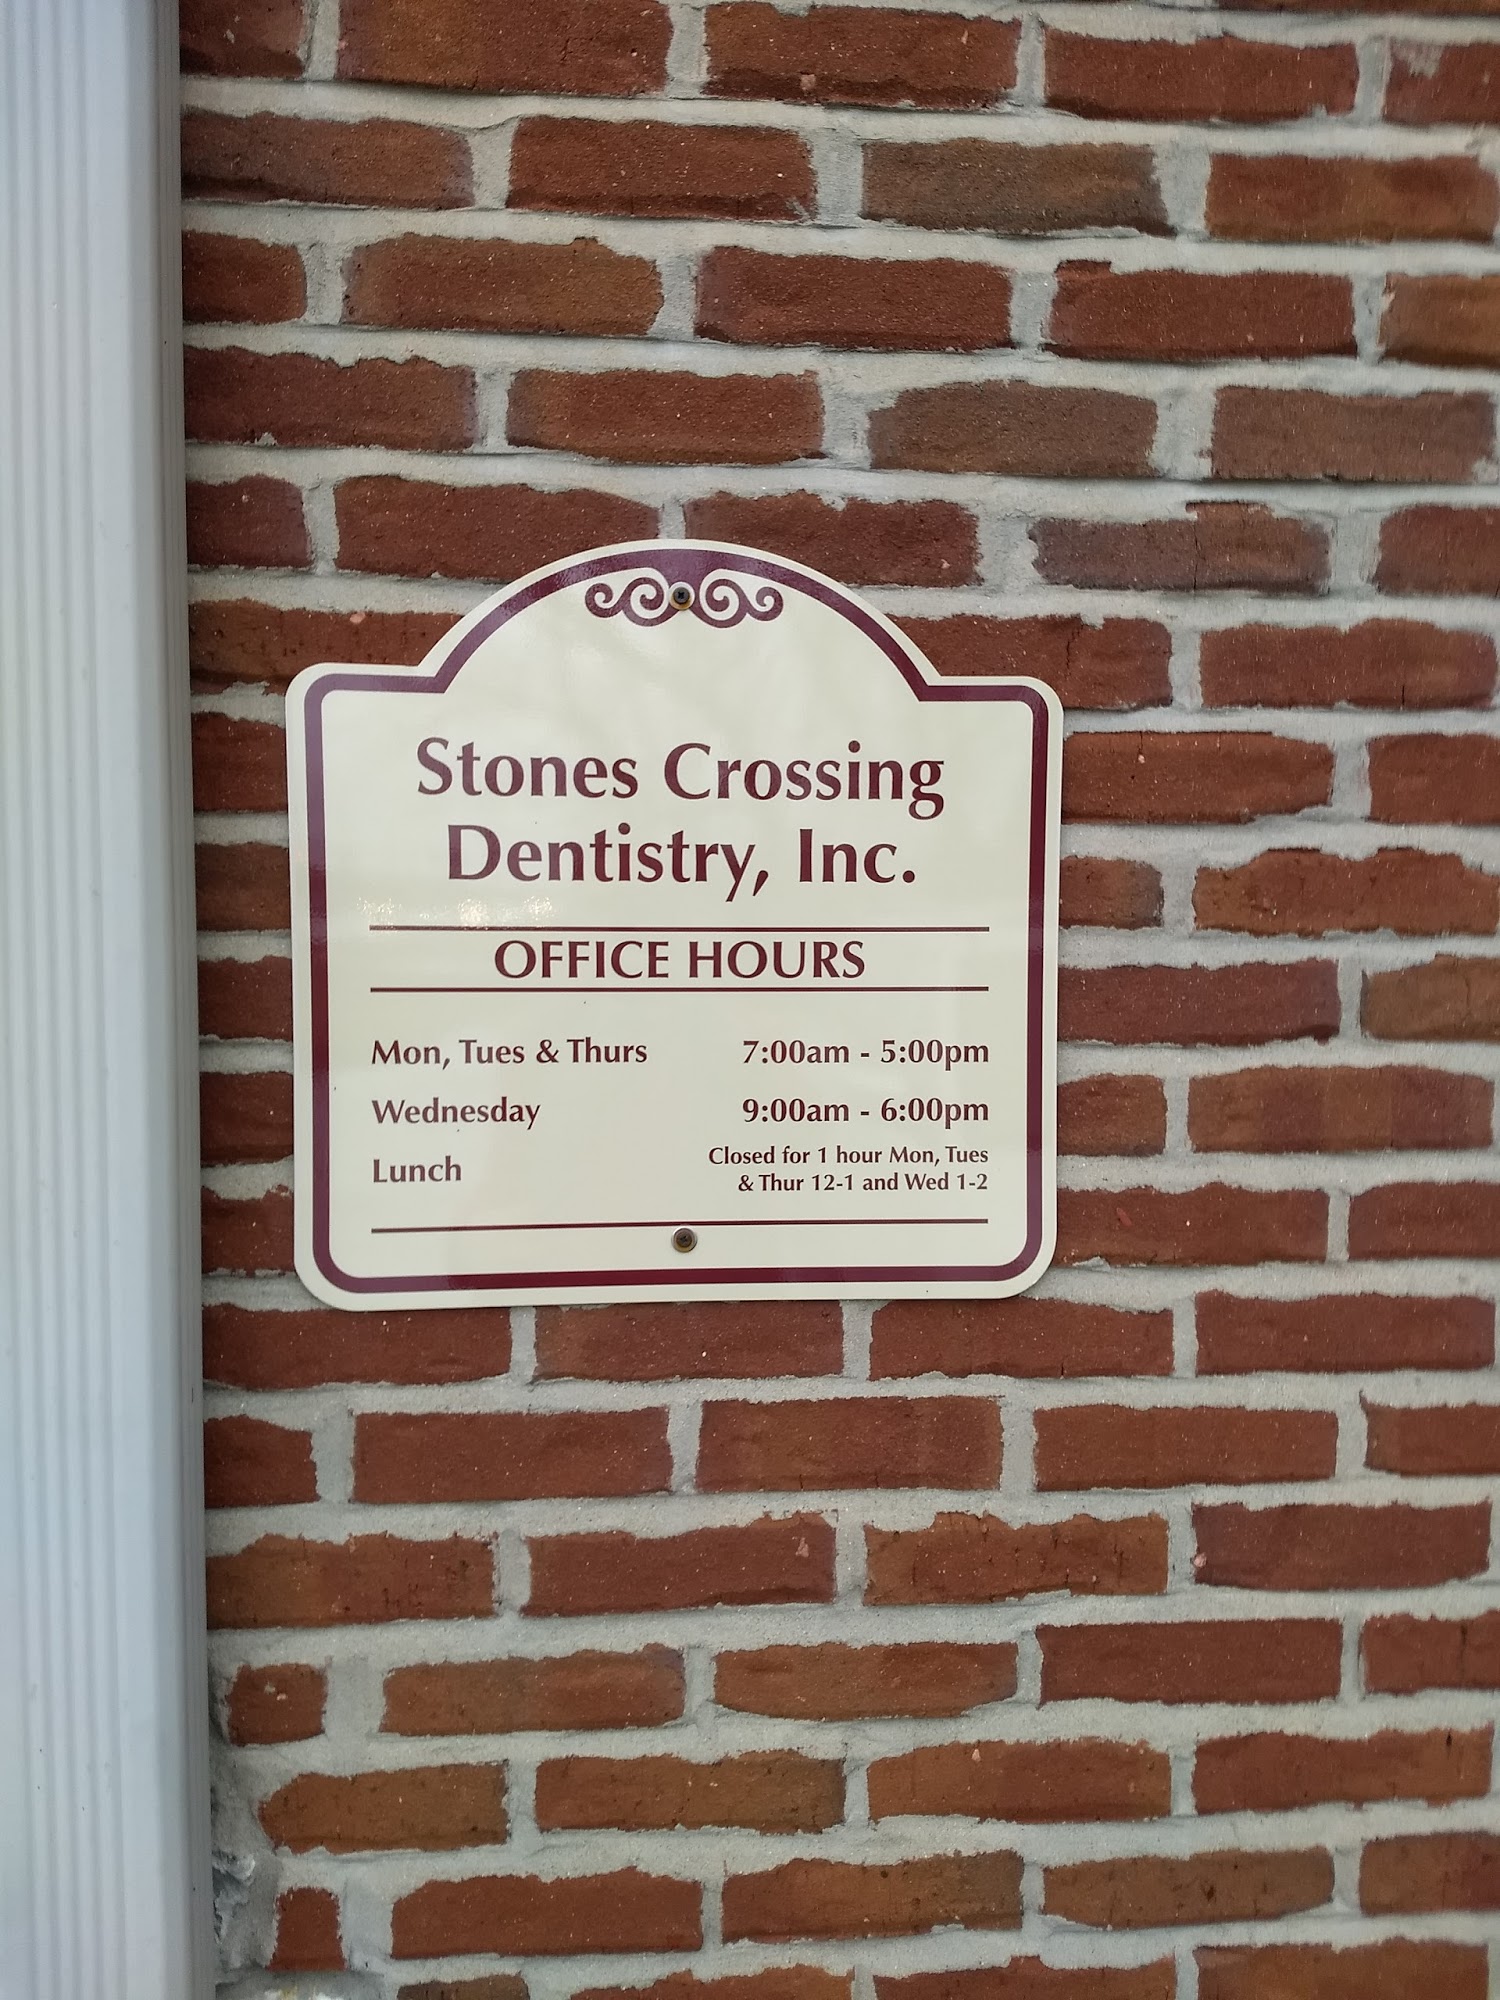 Stones Crossing Dentistry